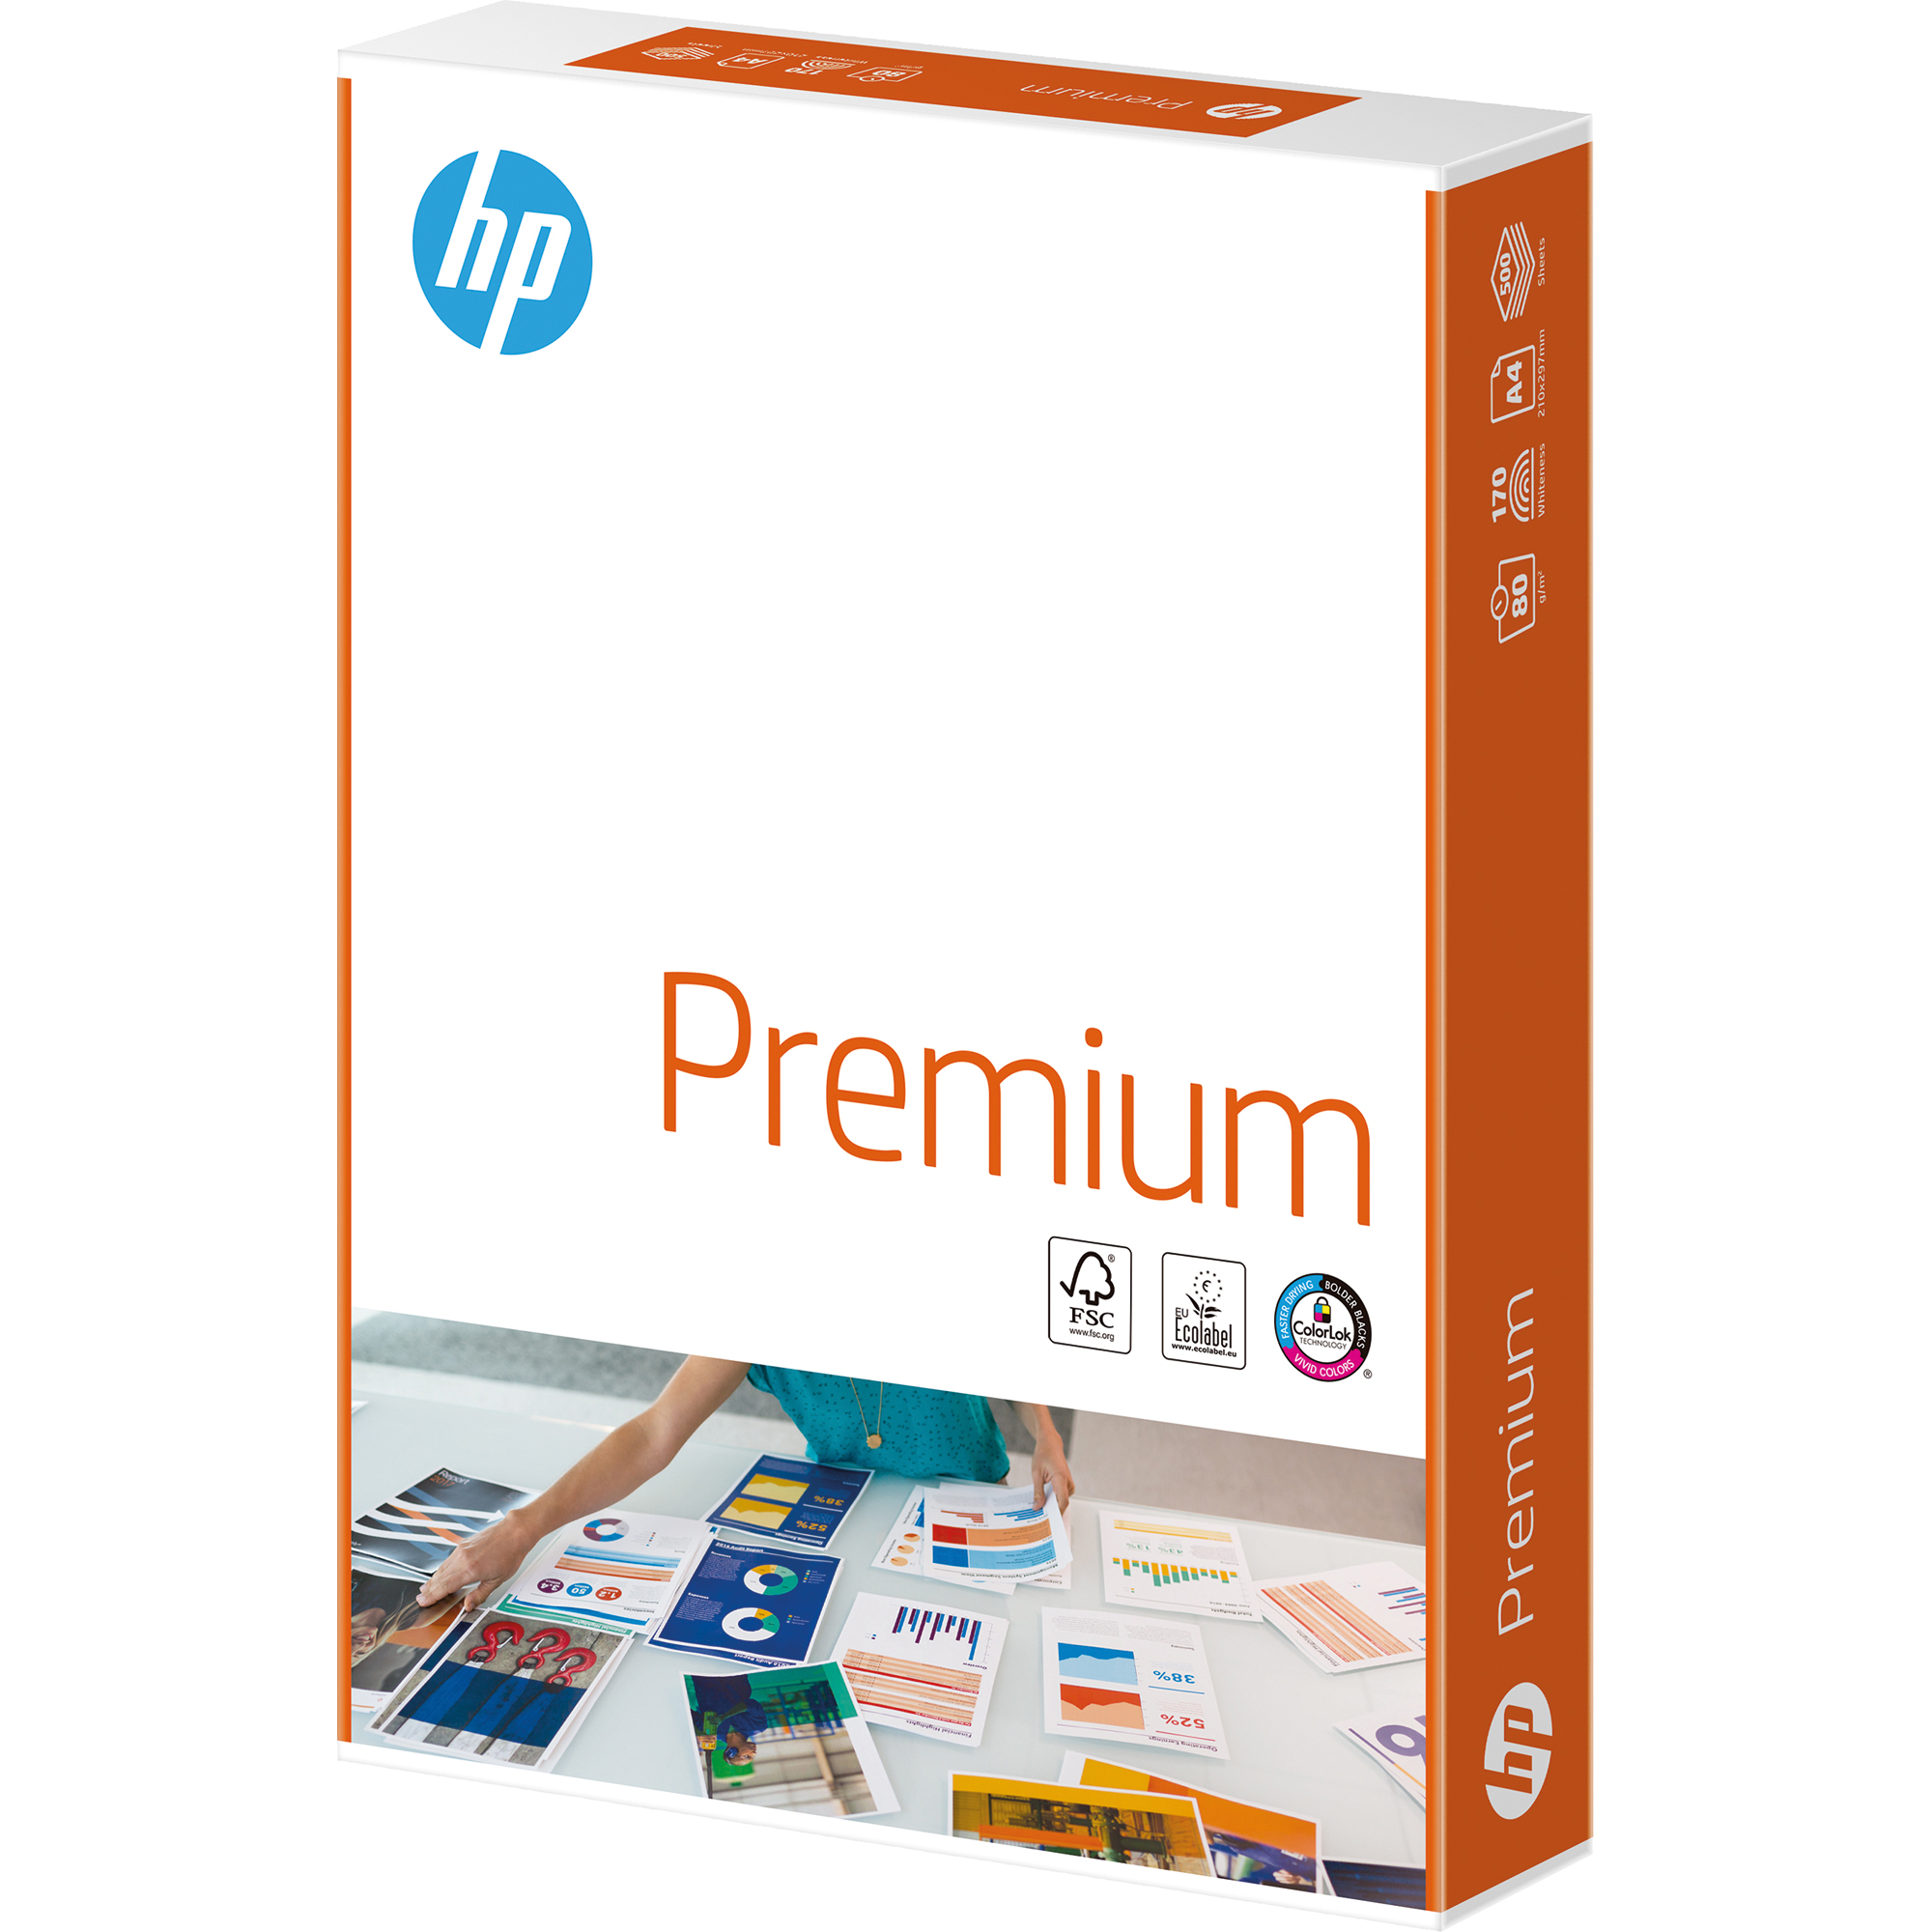 HP Kopierpapier Premium CHP850 80g Bl./Pack. weiß Kopierpapier A4 A4 Packung 1 500 DIN